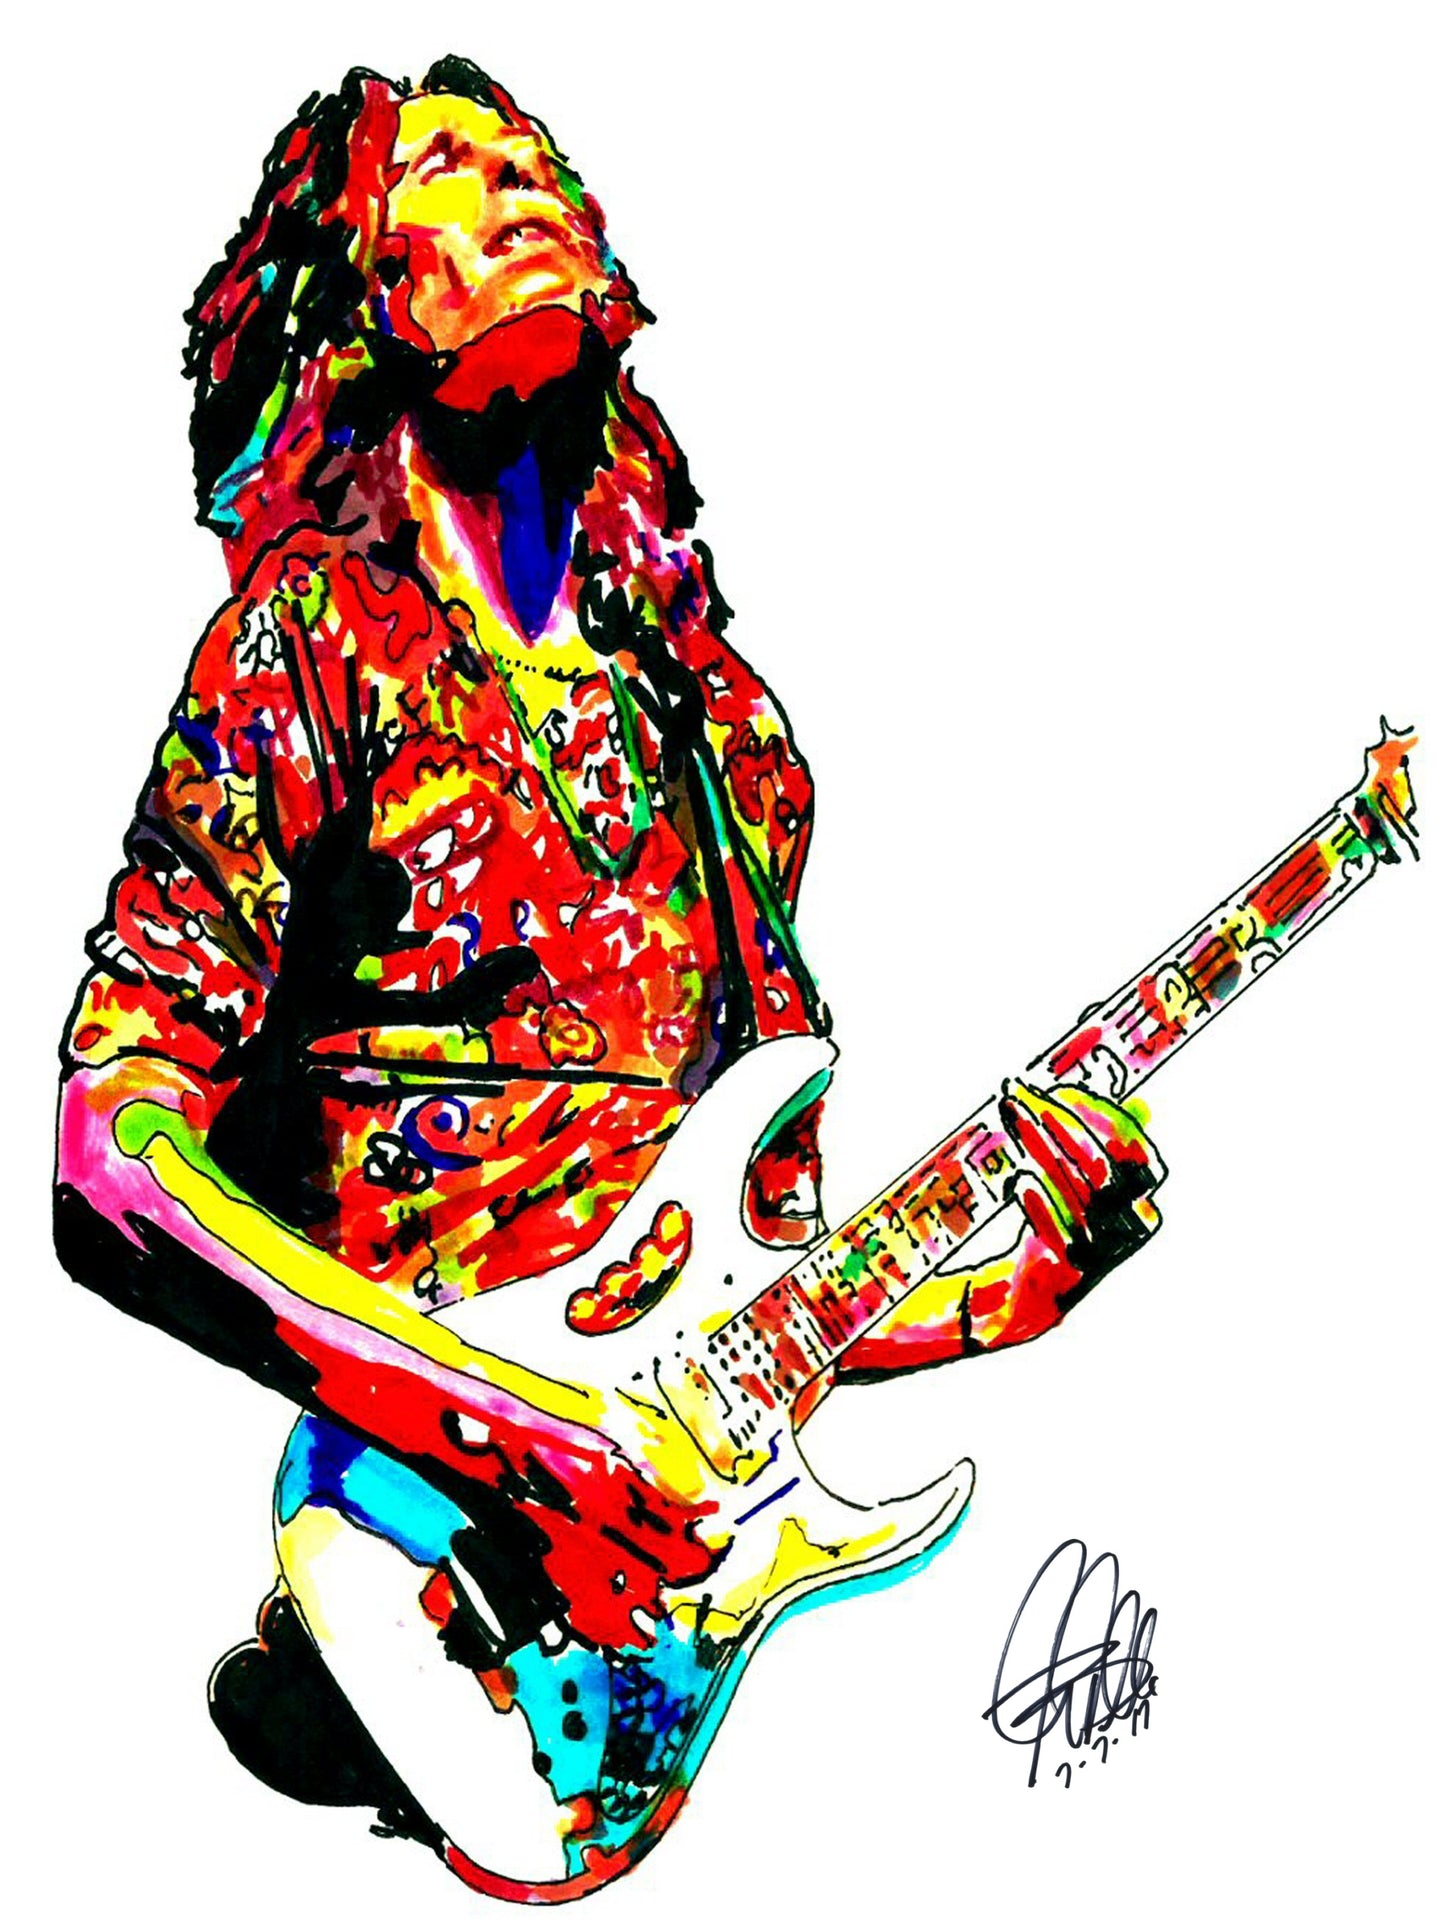 Steve Vai Guitar Rock Music Poster Print Wall Art 8.5x11